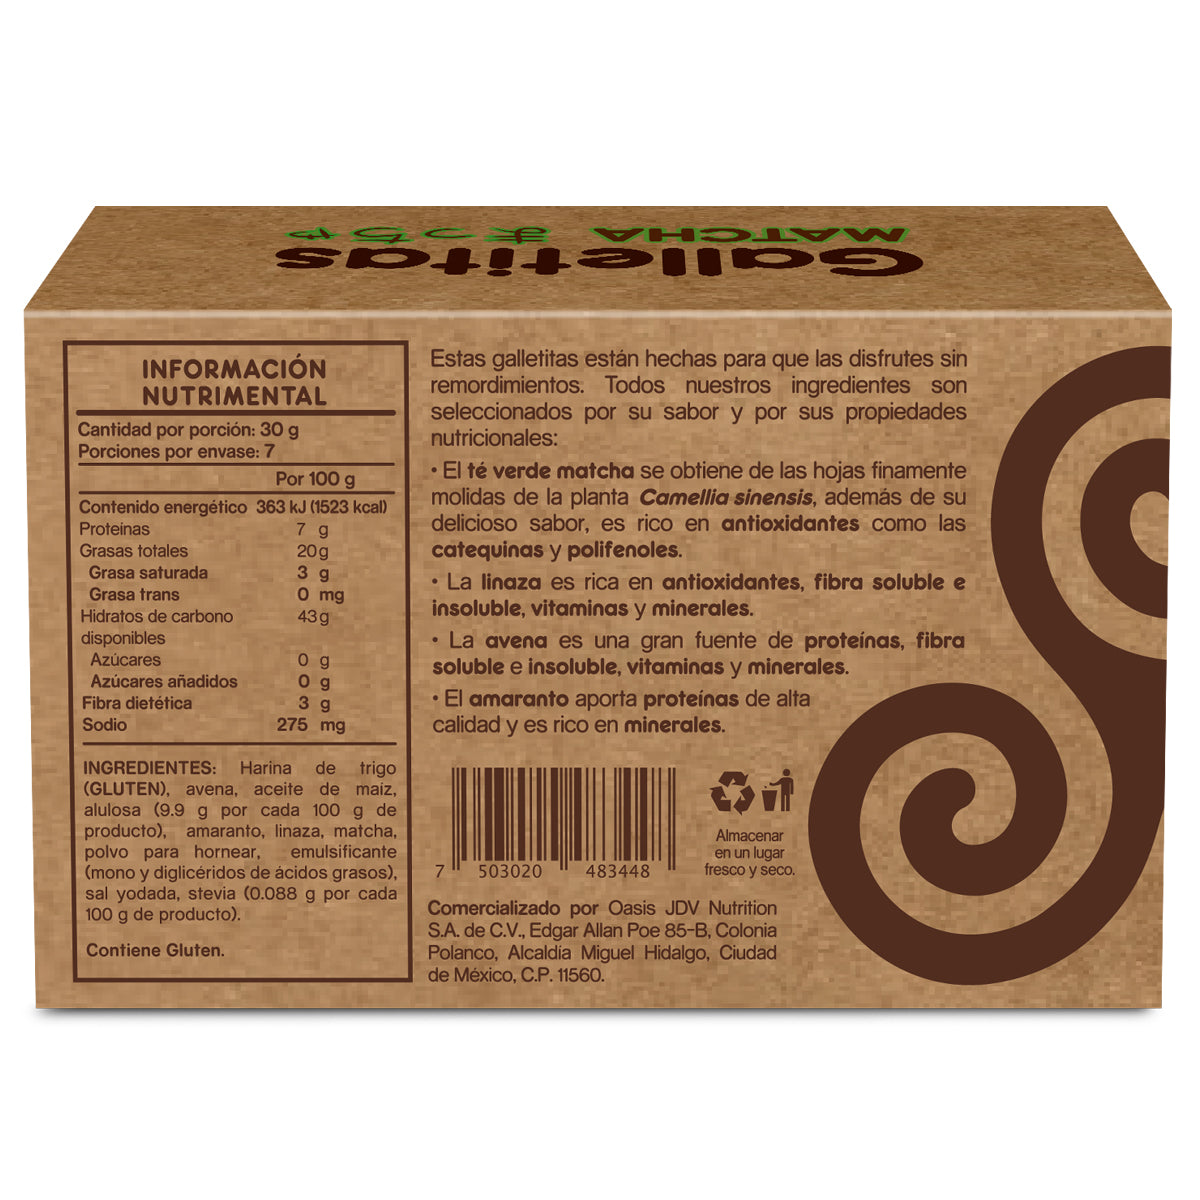 3 Pack Galletas Vivio Foods - Matcha, Cacao Nibs y Nuez